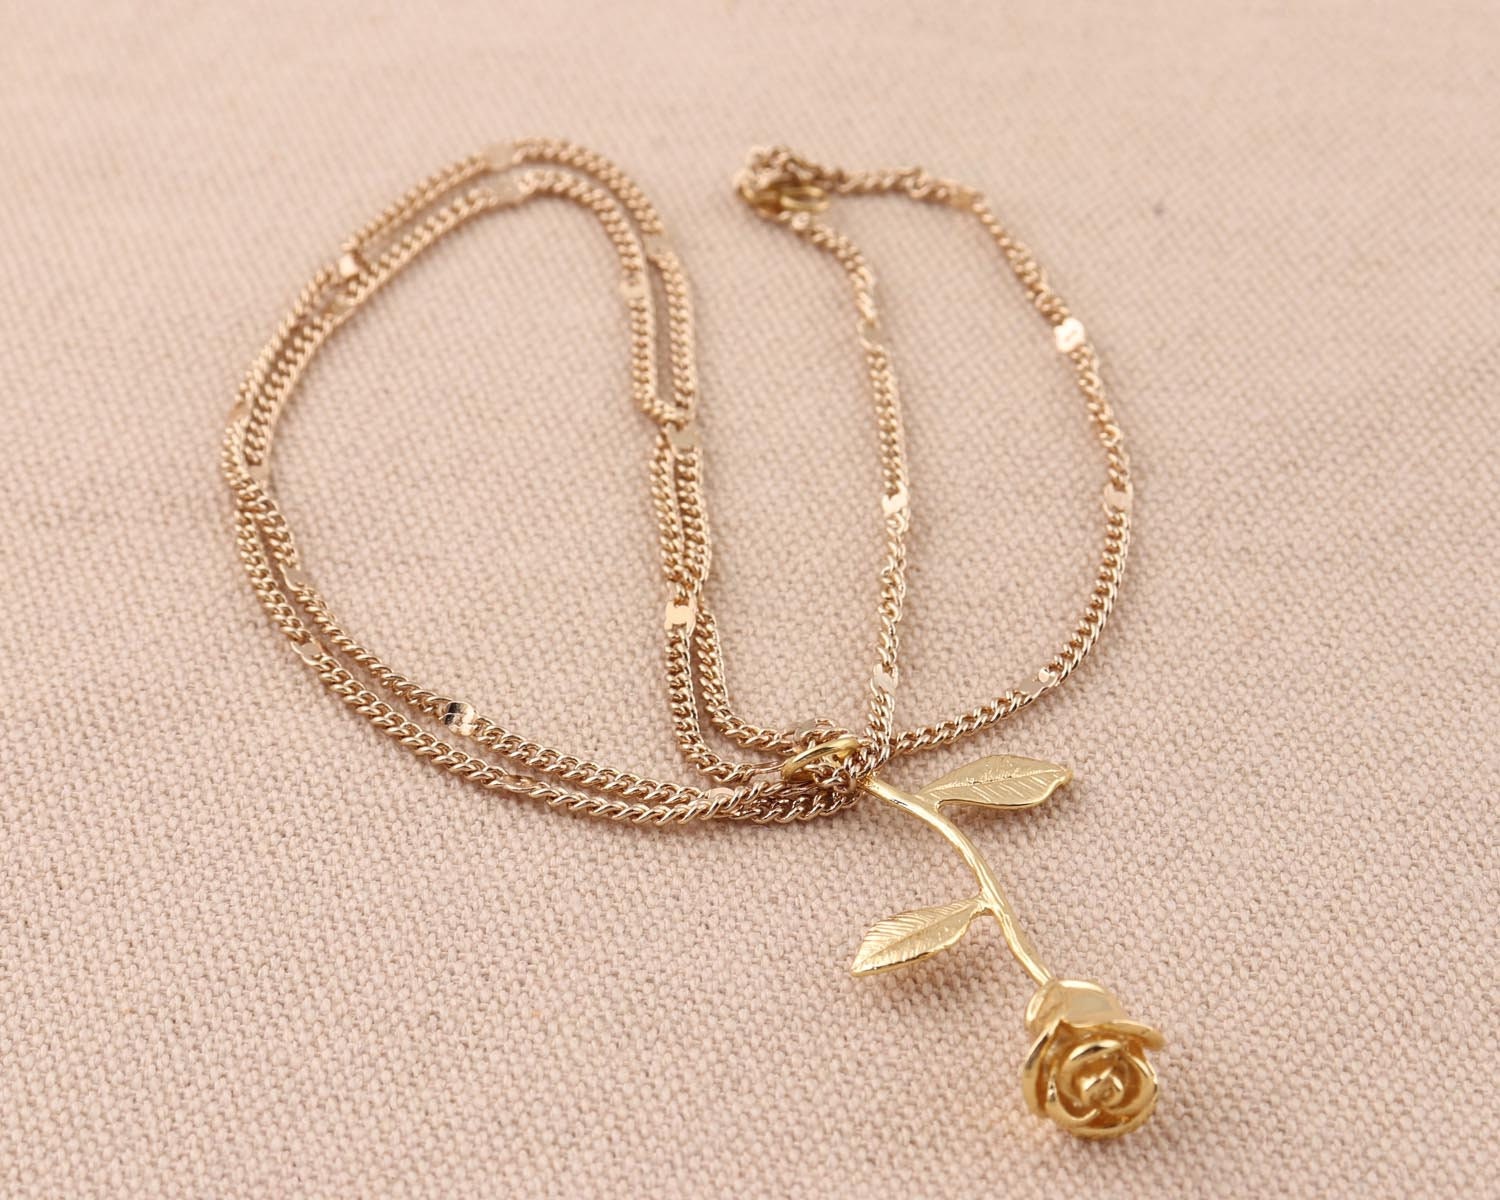 Unique Design Gold Rose Gold Pendant necklace Pendant flower